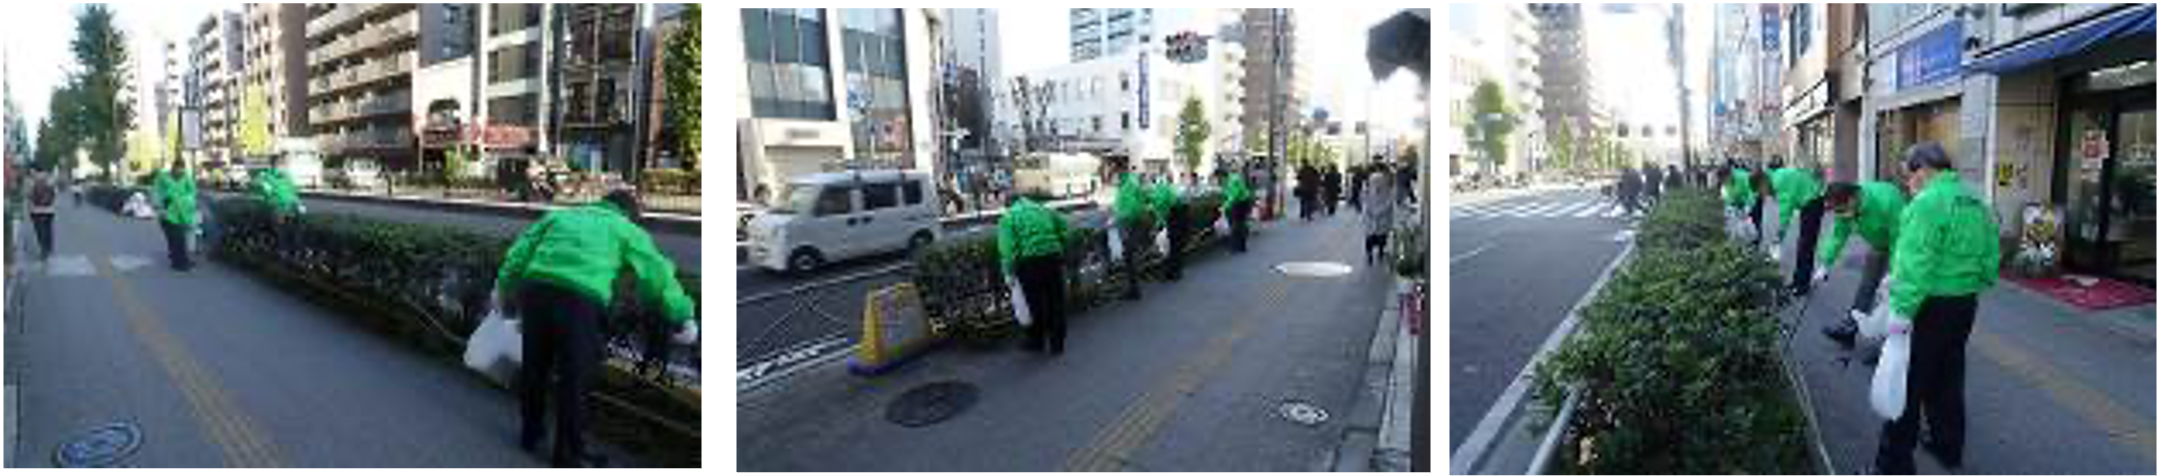 東京営業所入居ビル周辺の清掃活動の様子